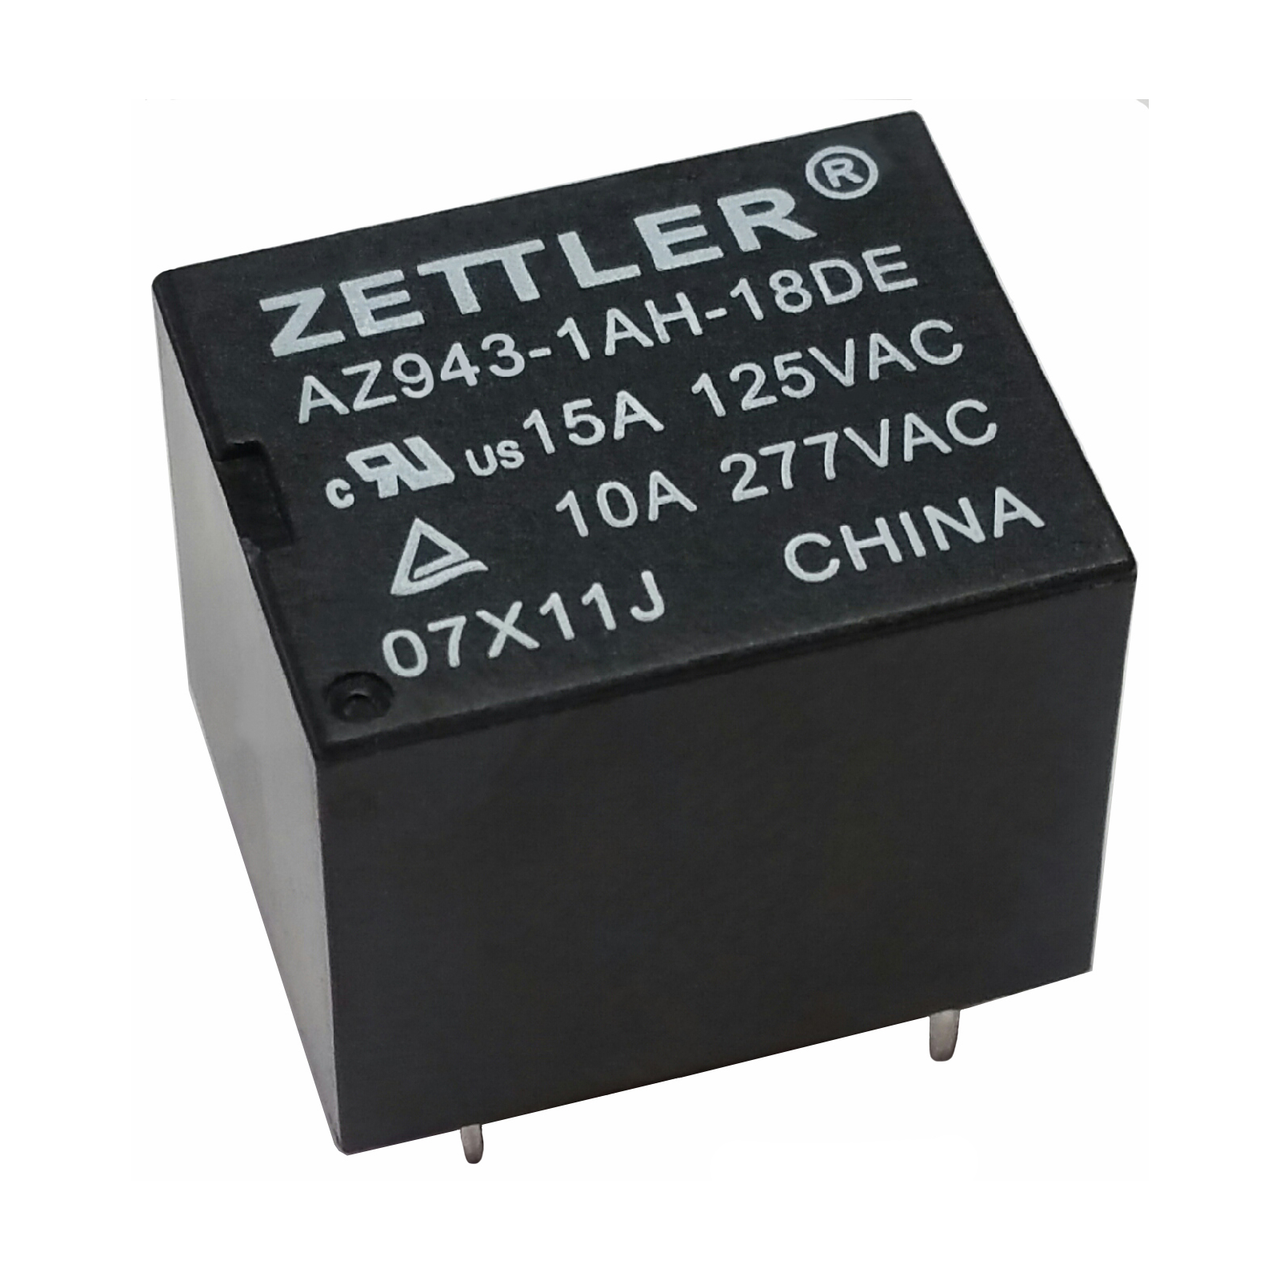 American Zettler AZ943-1AH-12D Power Relay